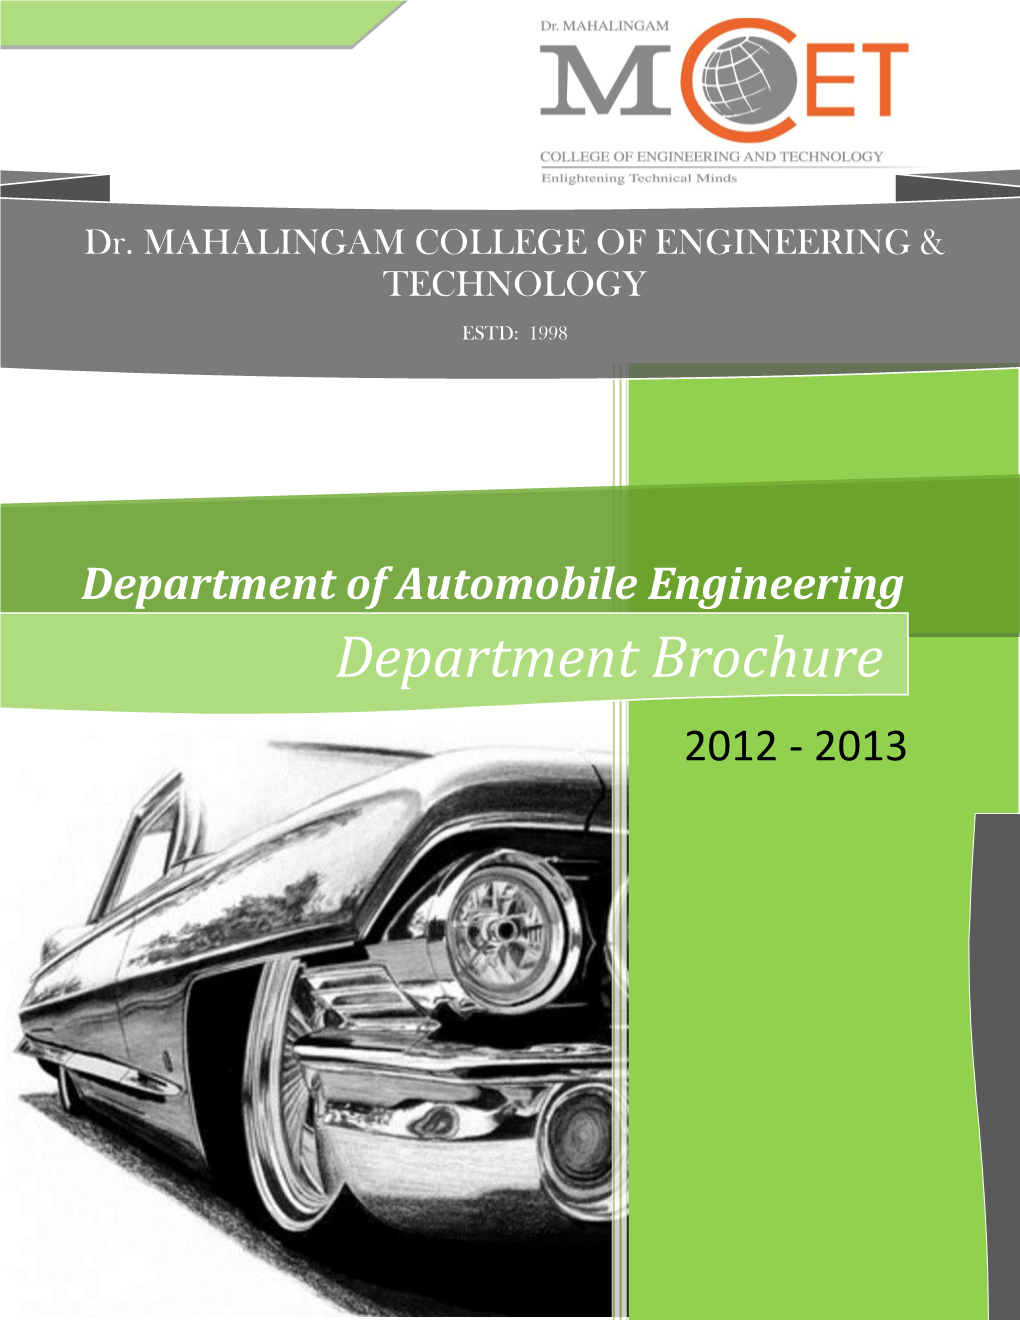 Department Brochure 2012 - 2013